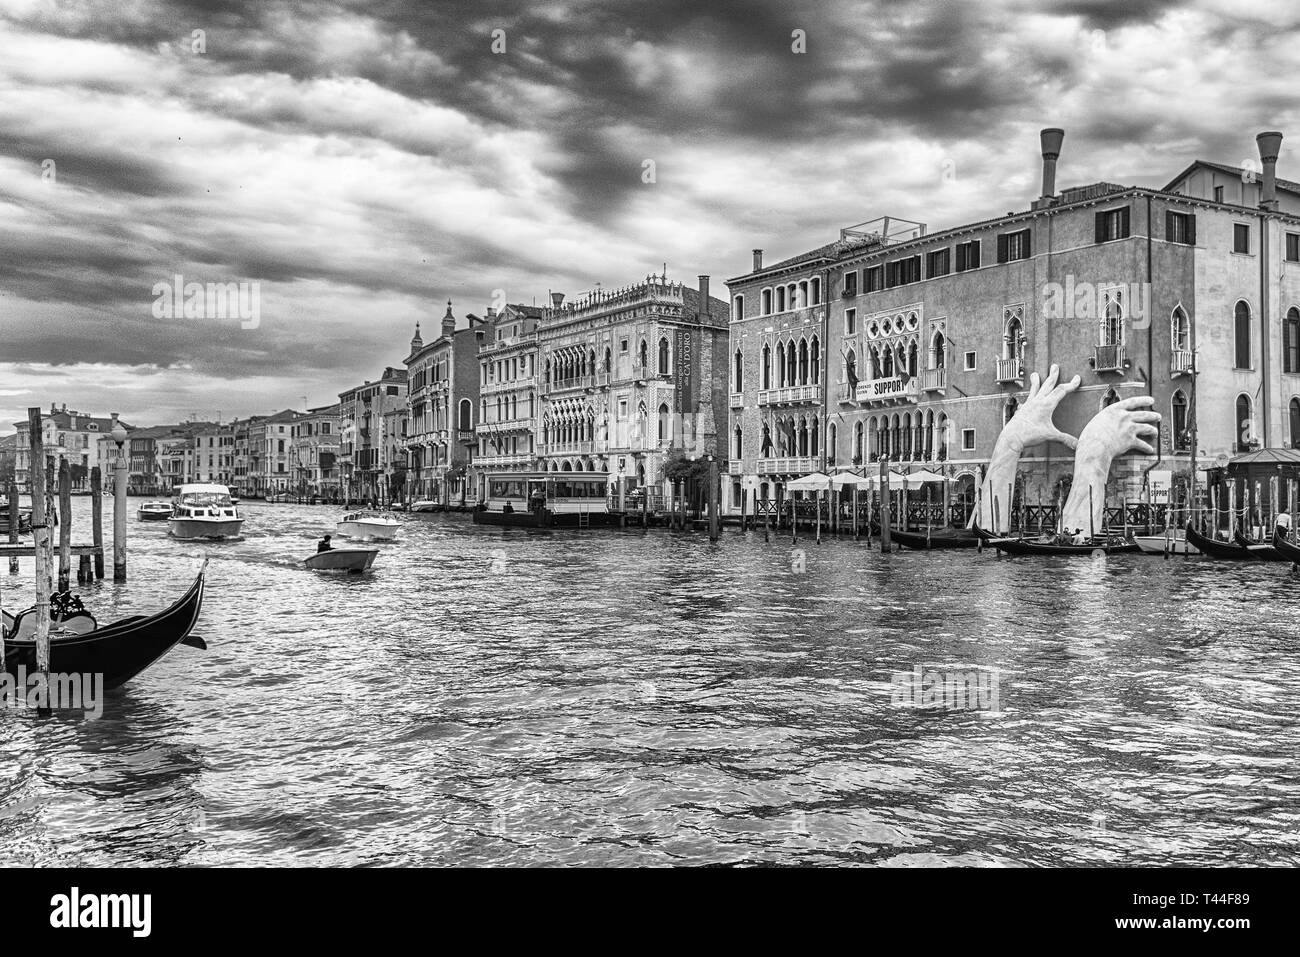 Venedig, Italien - 29. April: Die malerische monumentale Skulptur der Hände eines Kindes namens 'Support' von Lorenzo Quinn, in den Grand Canal in Venedig installiert Stockfoto